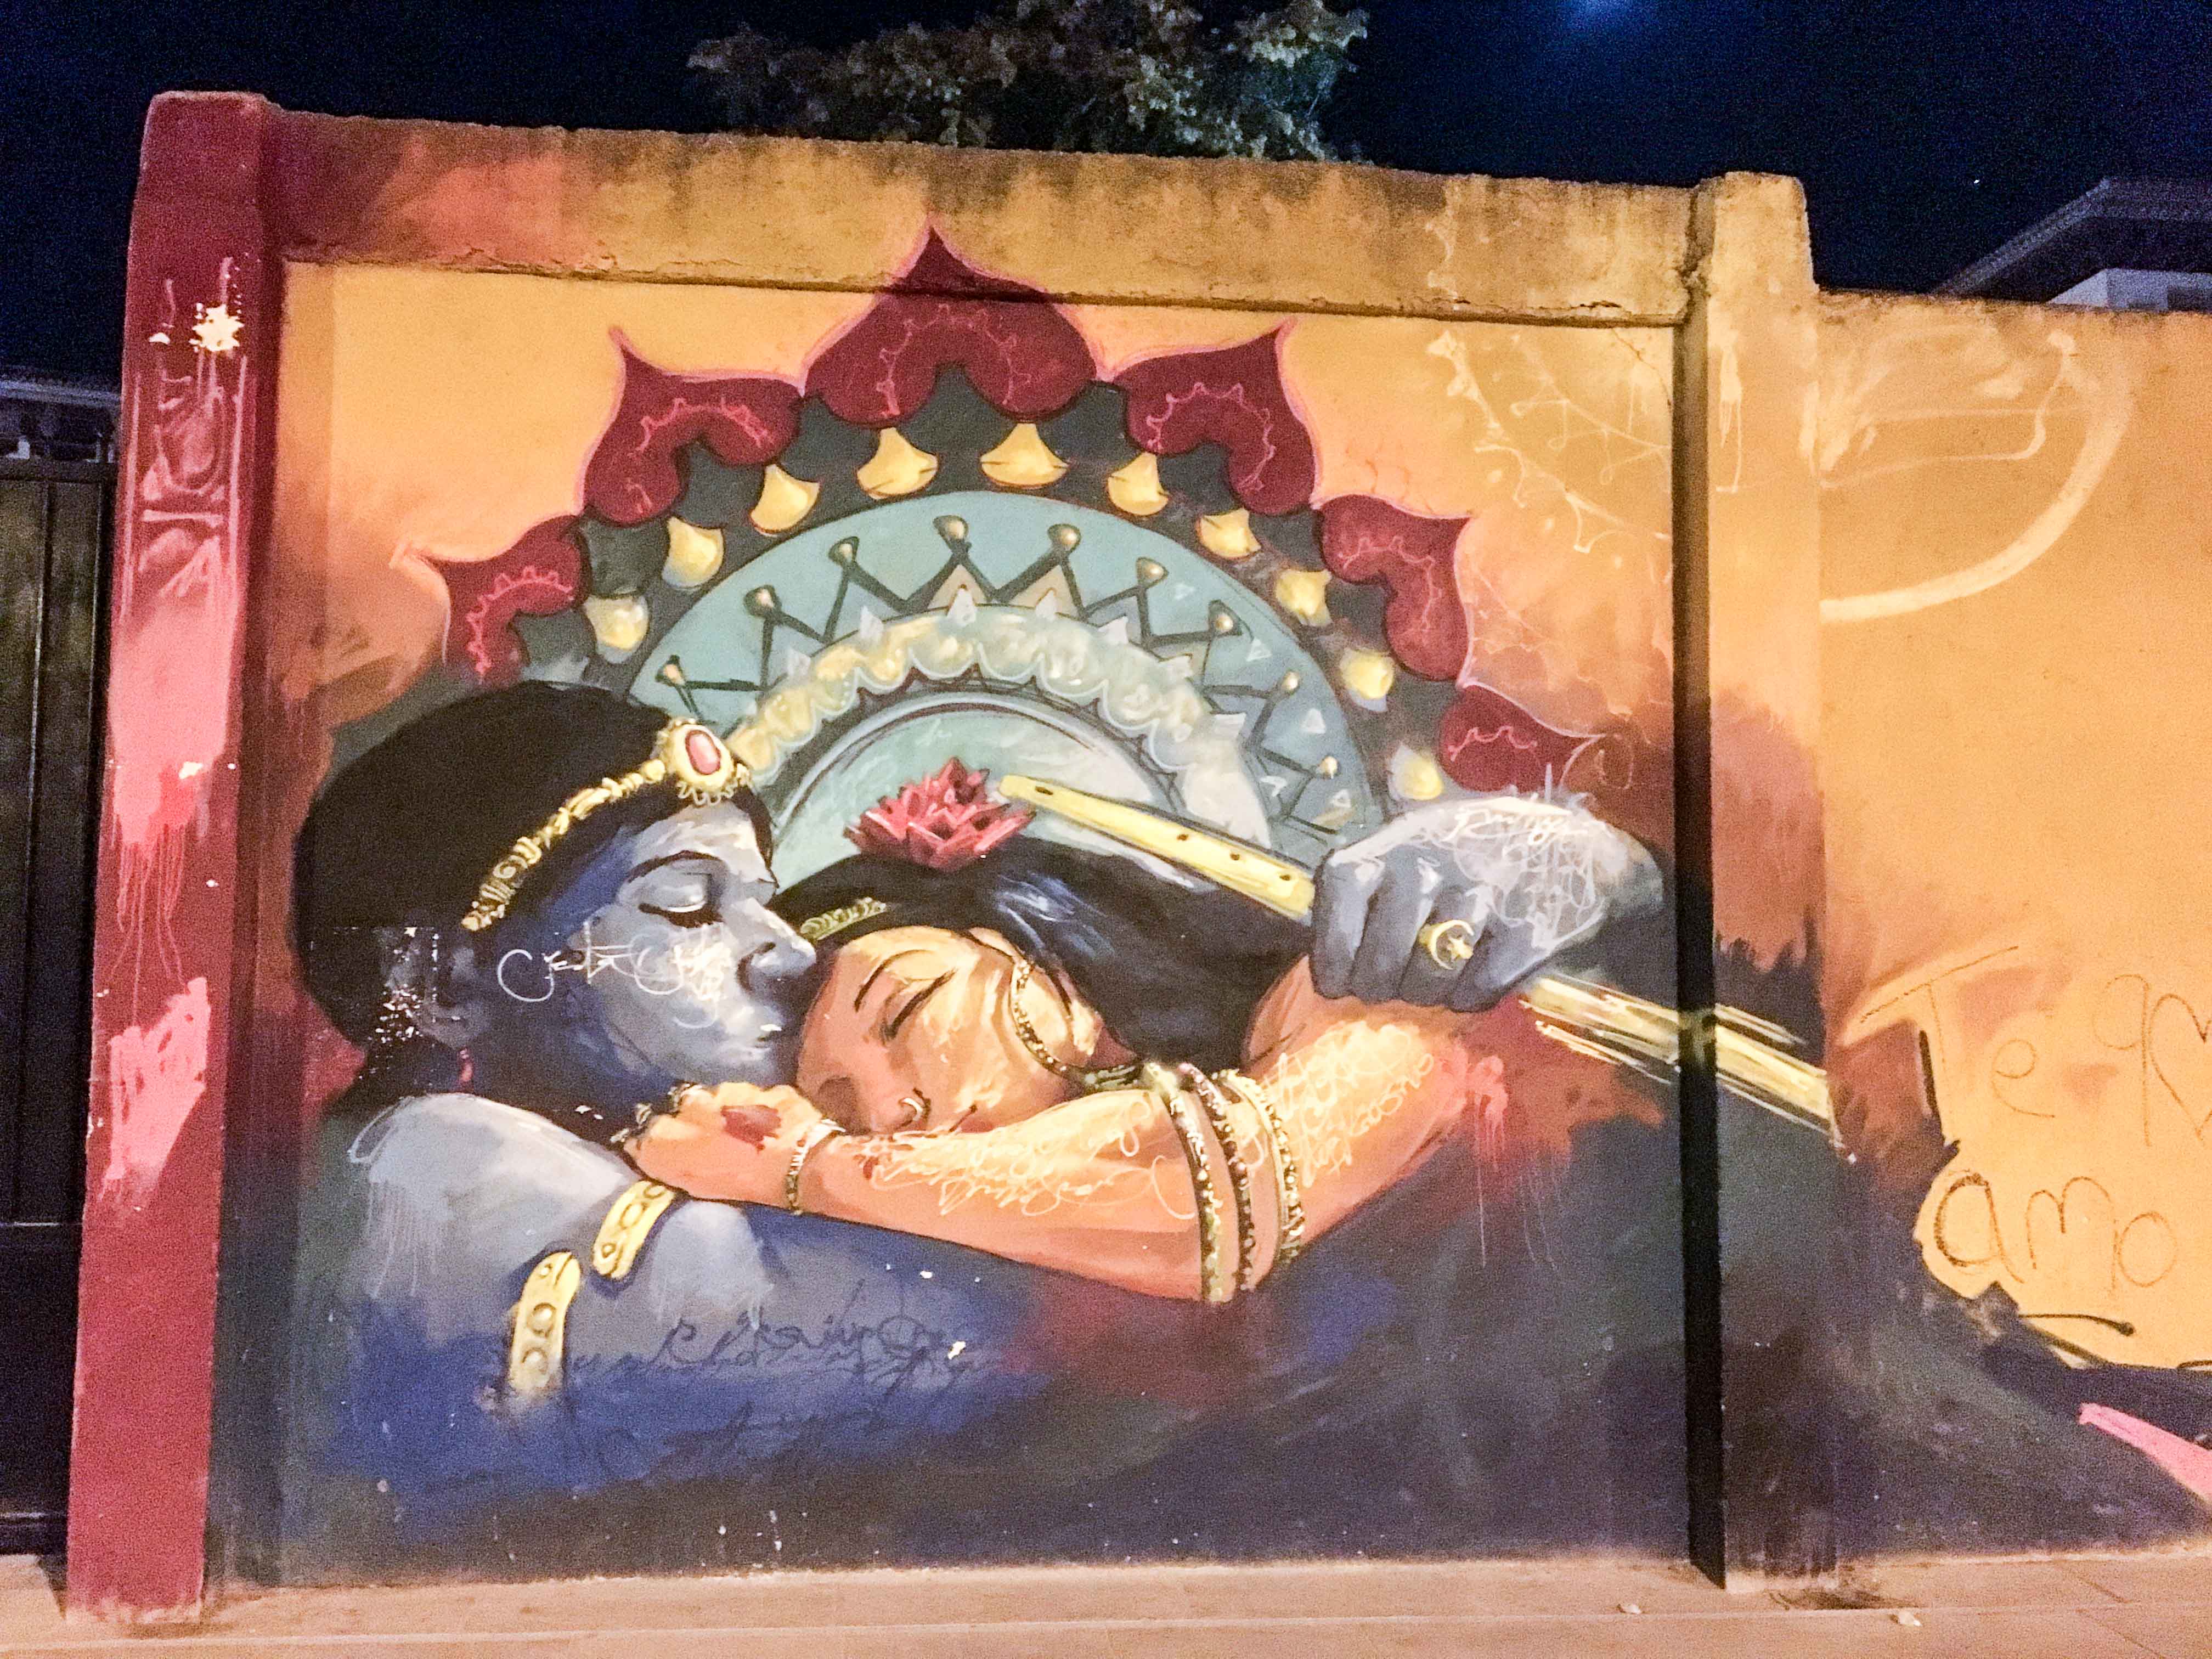 Mural von El Niño de las Pinturas zeigt bei Nacht ein Motiv eines schlafenden Pärchens aus Tausend und einer Nacht